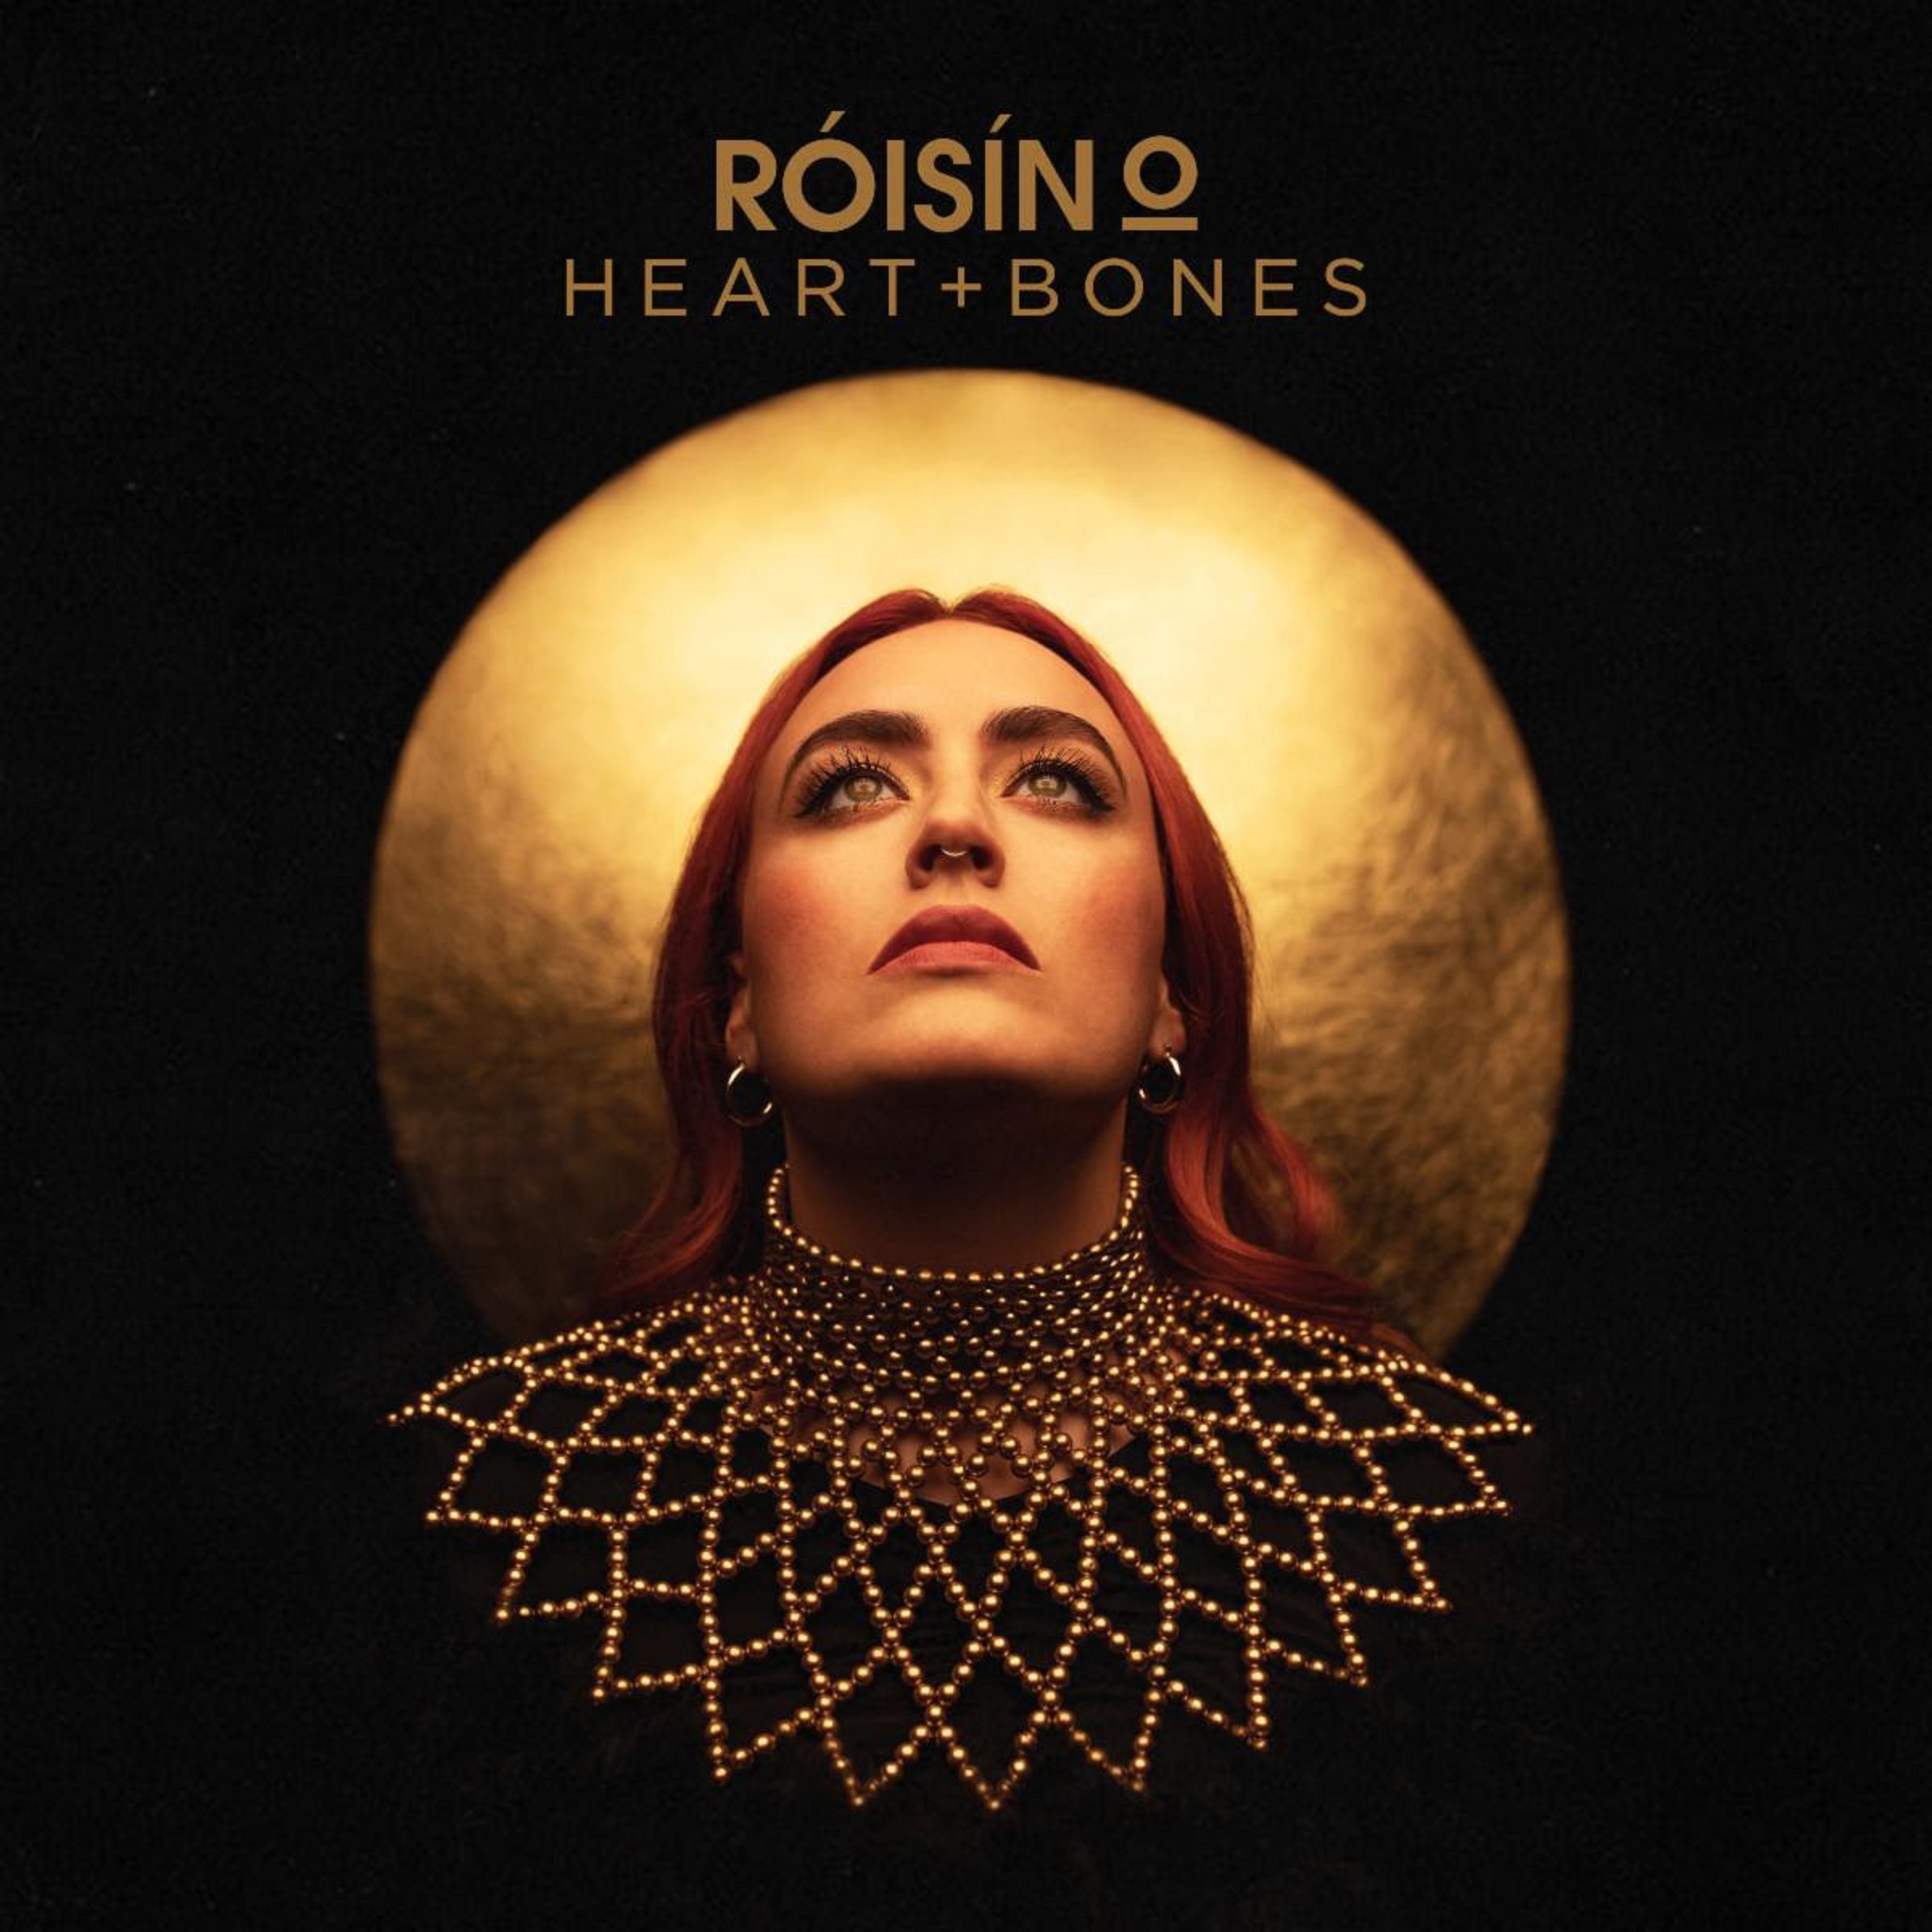 Irish Singer Roisin O Releases New Single HEART + BONES on January 22